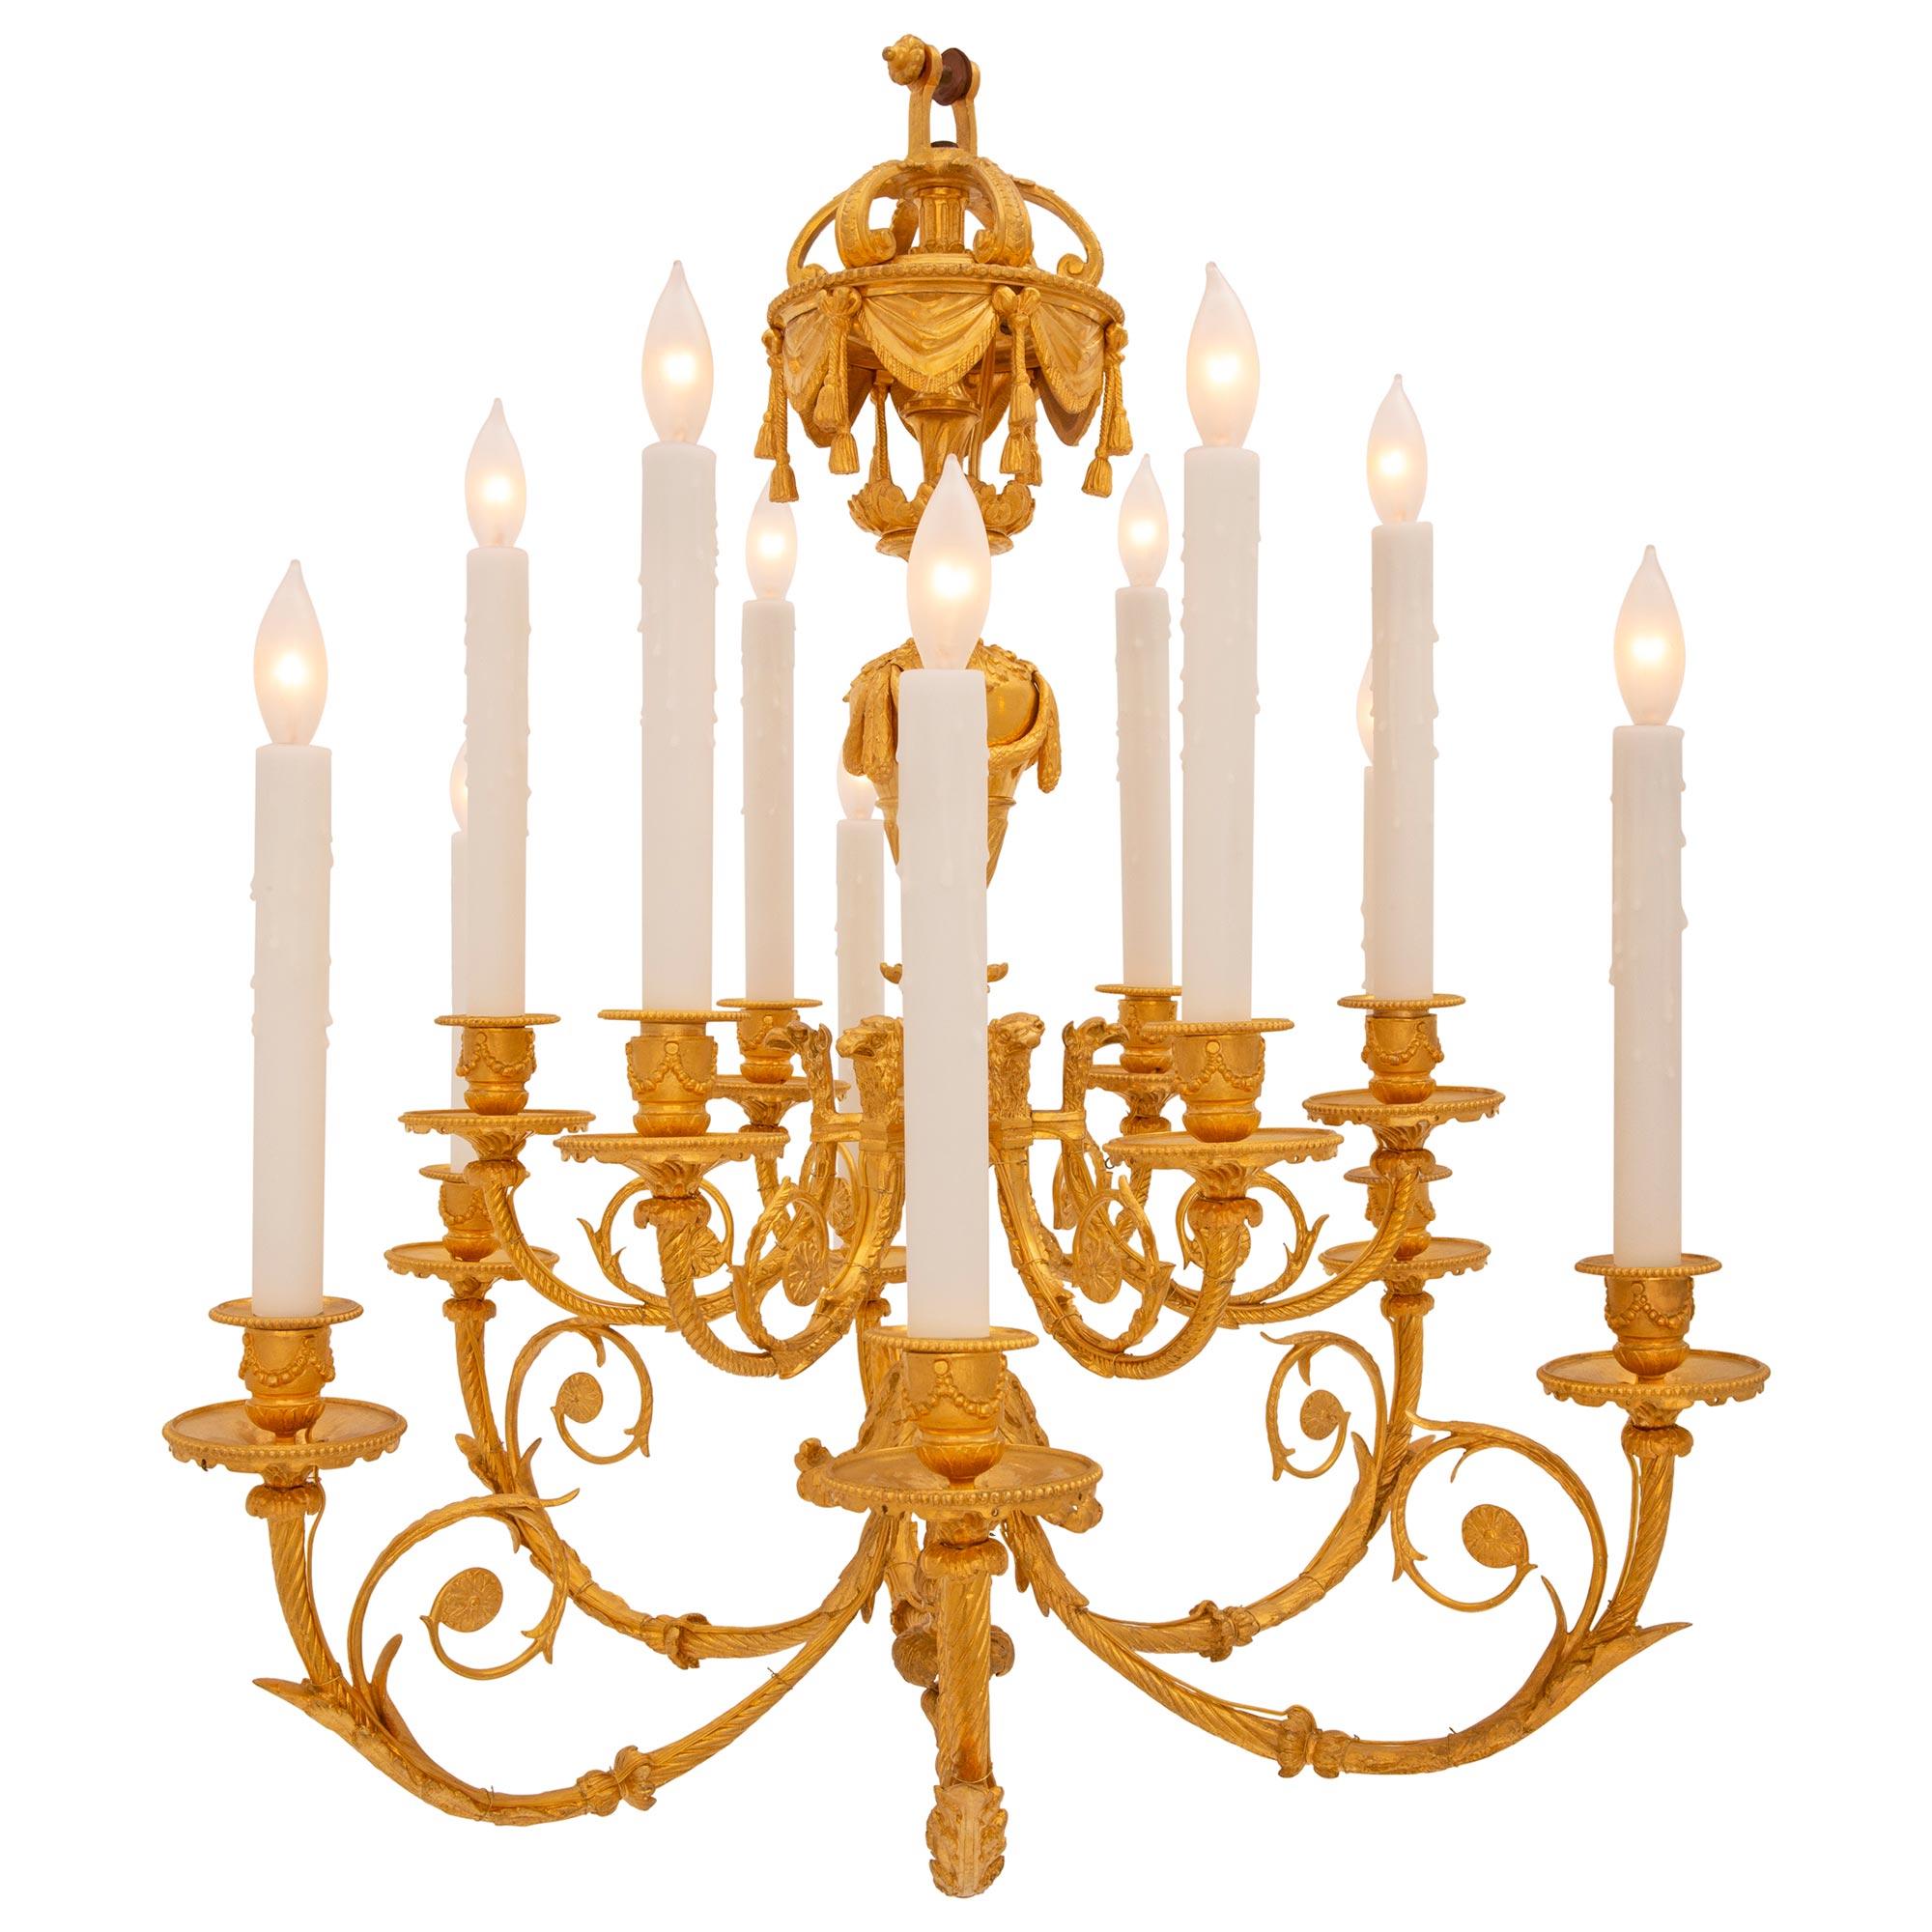 Un élégant lustre en bronze doré de très haute qualité, de style Louis XVI, datant du 19ème siècle. Le lustre à douze bras est centré par un joli fleuron inférieur feuillagé sous le fut central orné de feuilles d'acanthe richement ciselées. Les bras